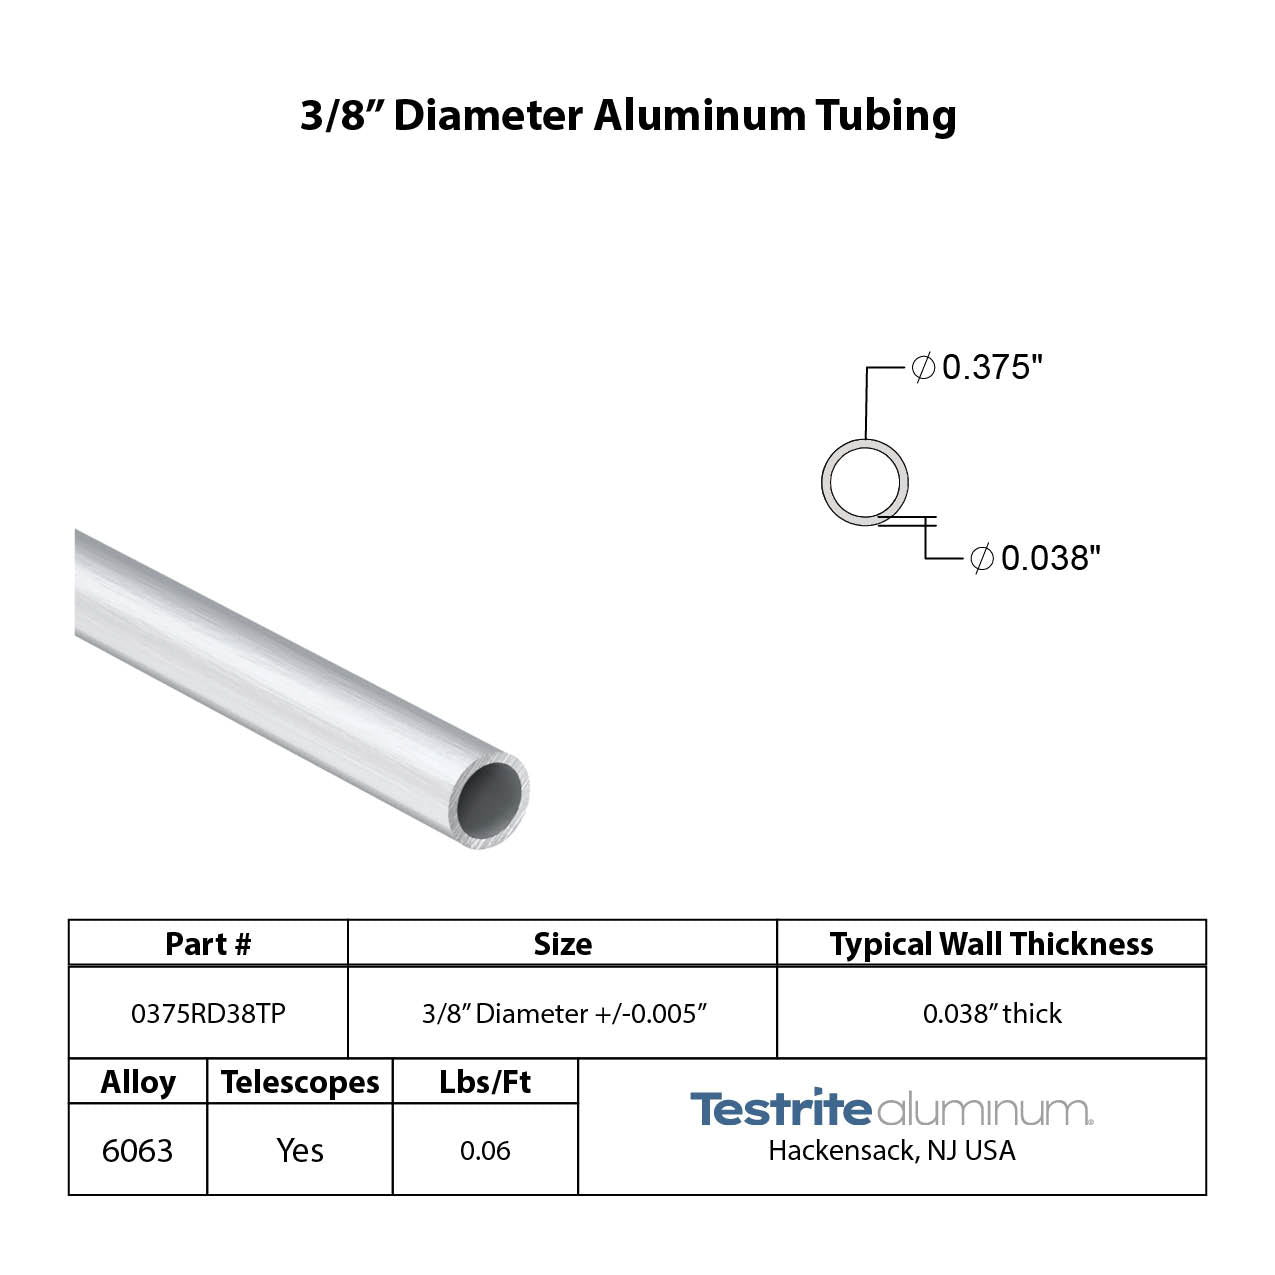 3/8" Diameter drawn aluminum tubing print